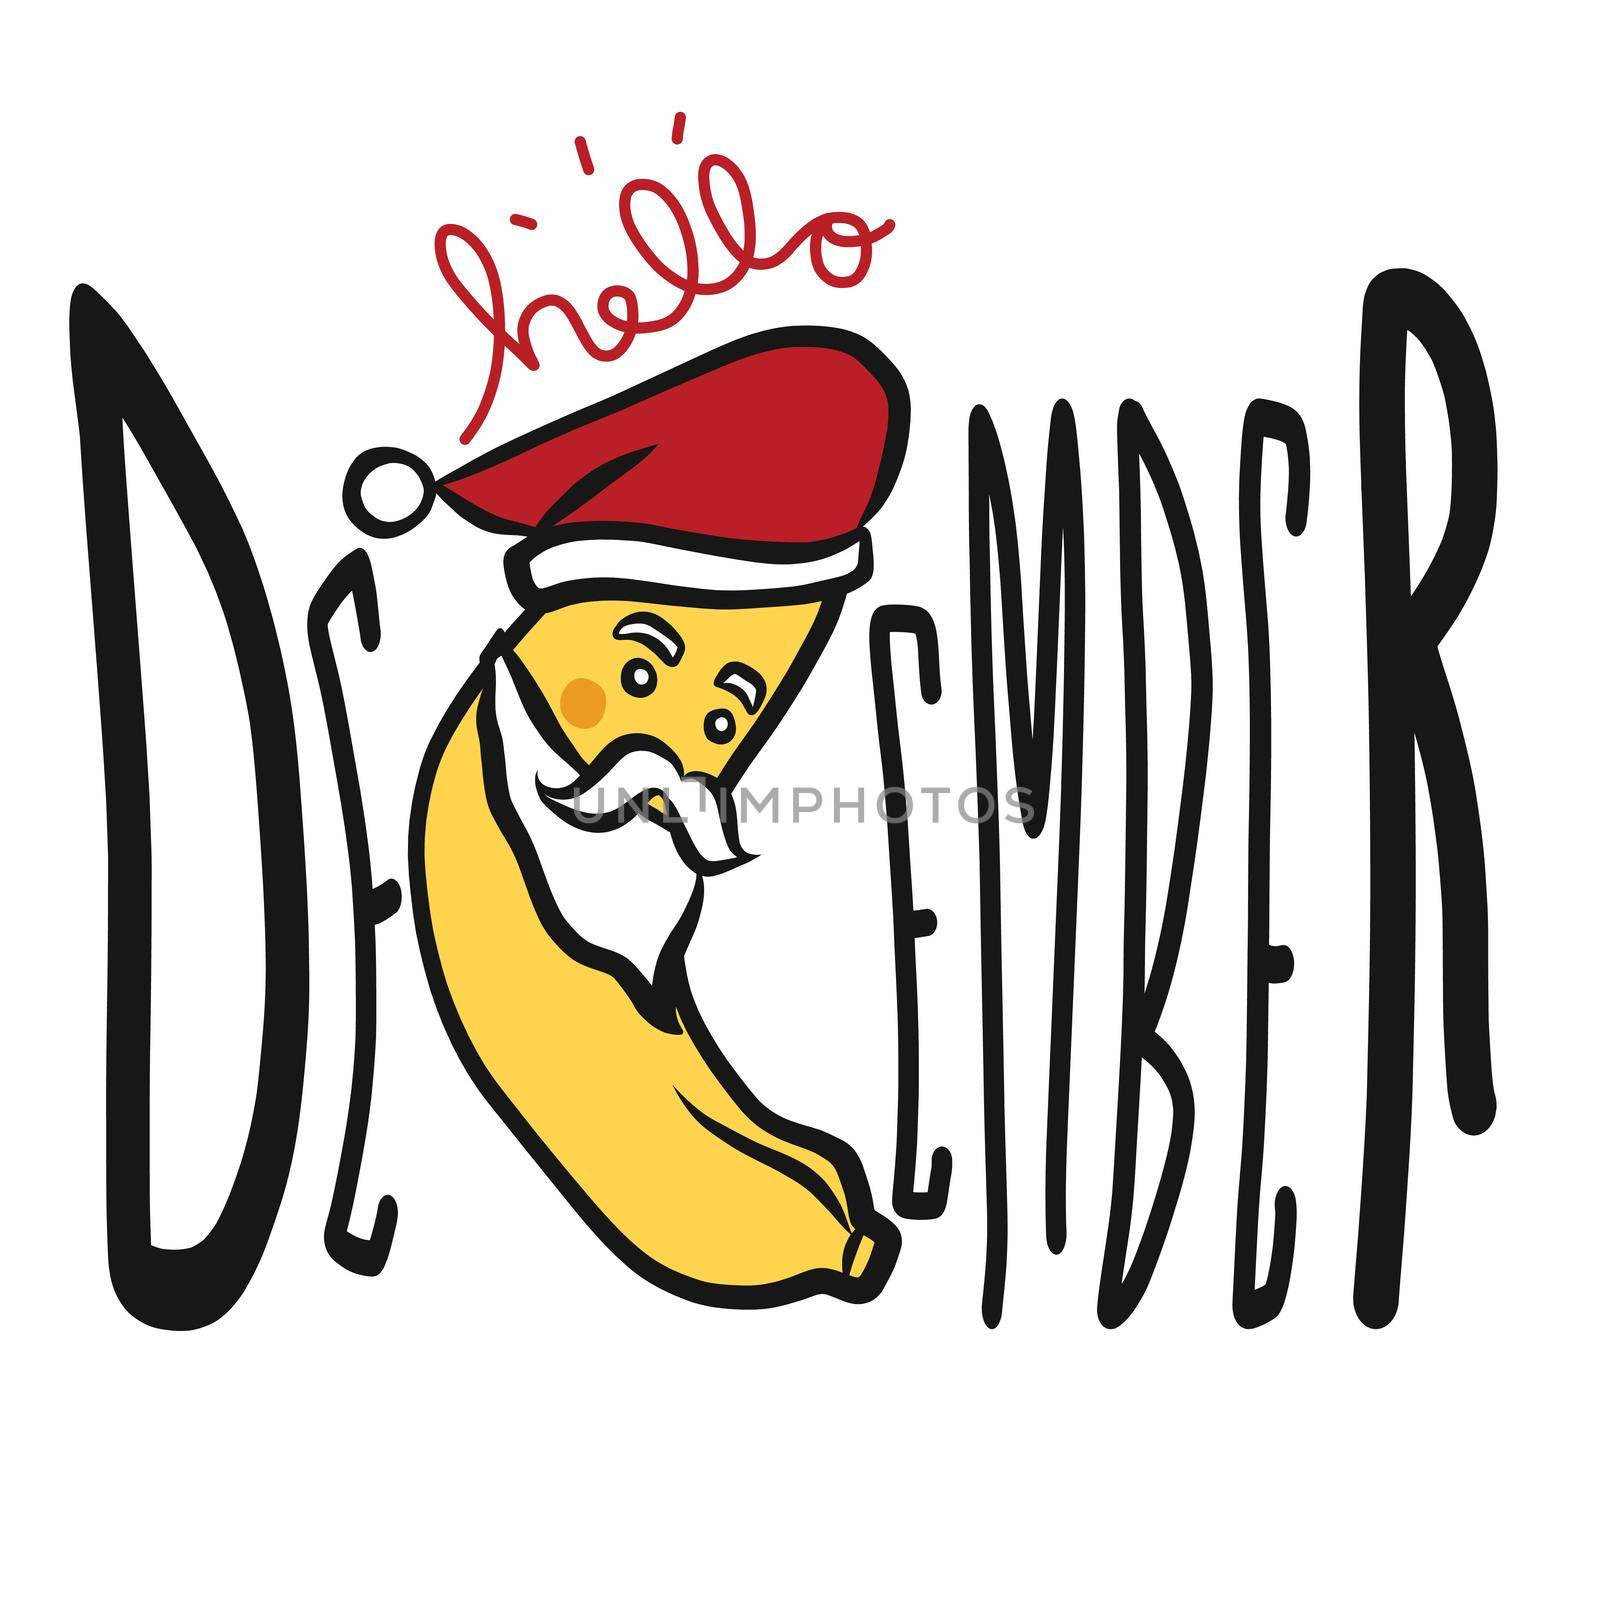 Hello December Santa banana cartoon vector illustration